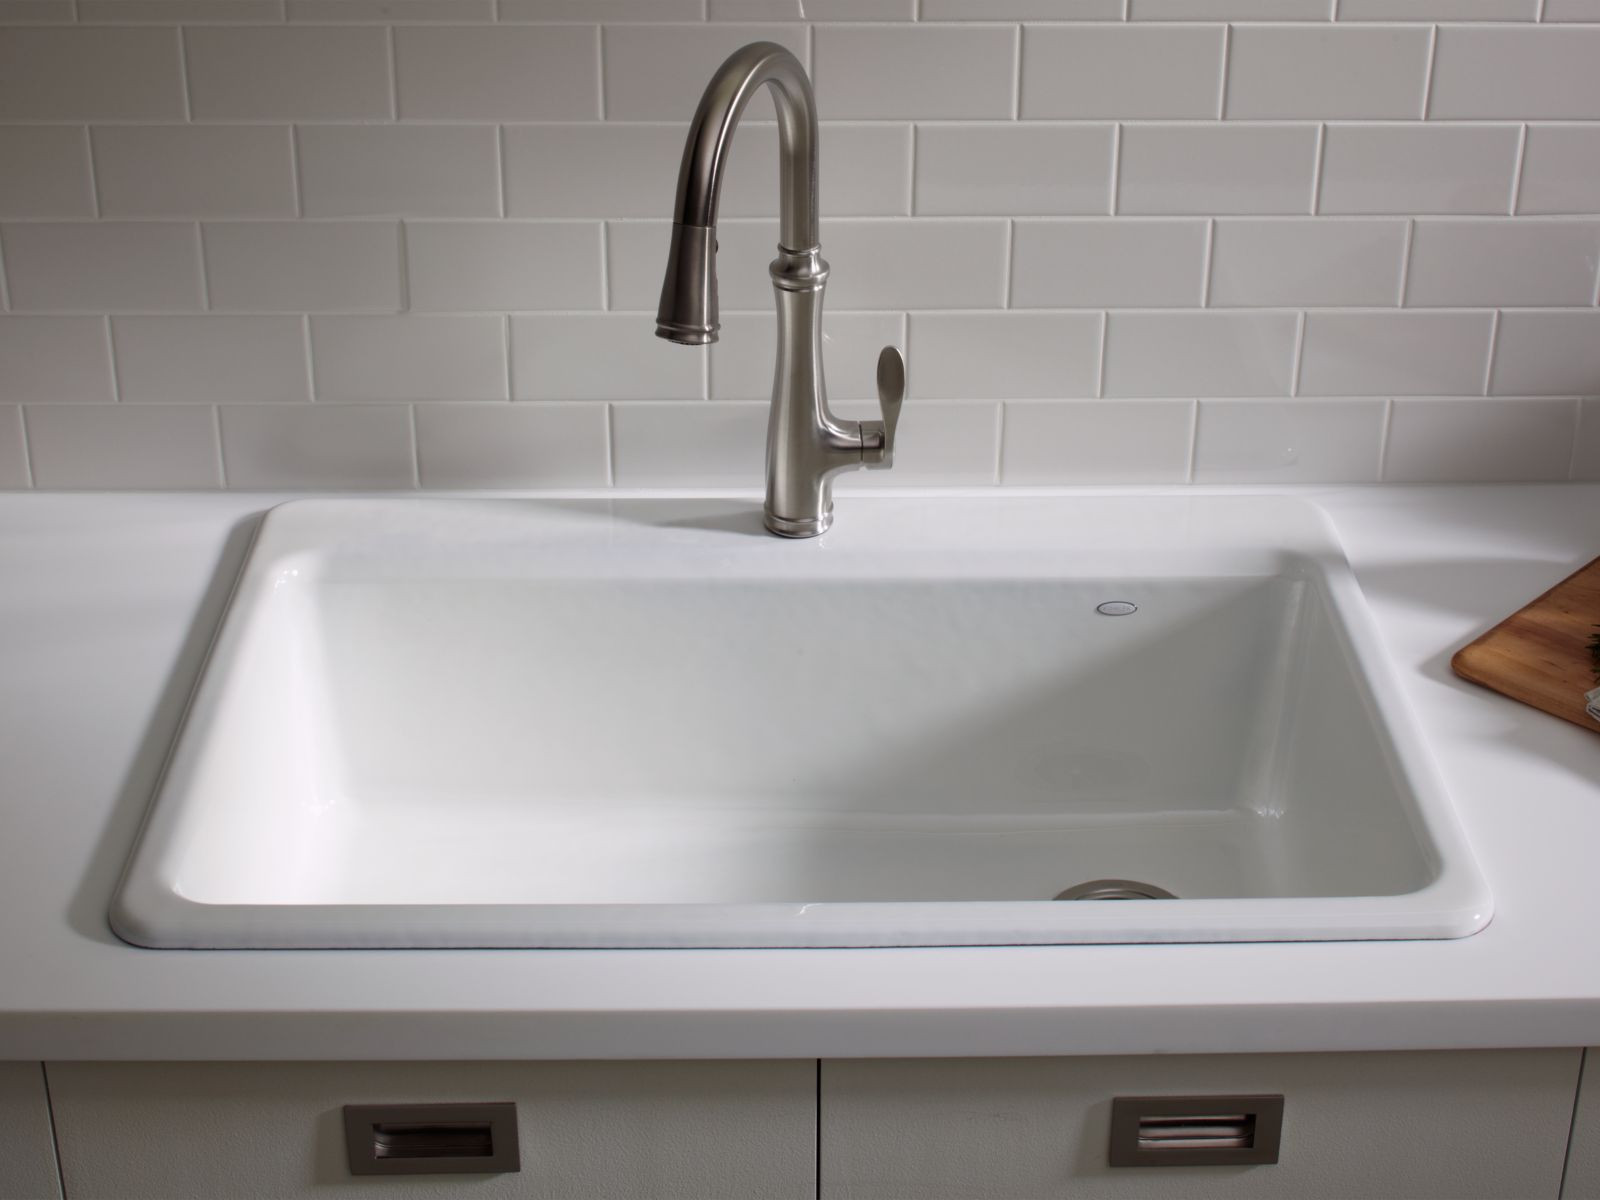 Kohler White Kitchen Sink New Standard Plumbing Supply Product Kohler K 5871 1a2 0 Of Kohler White Kitchen Sink 